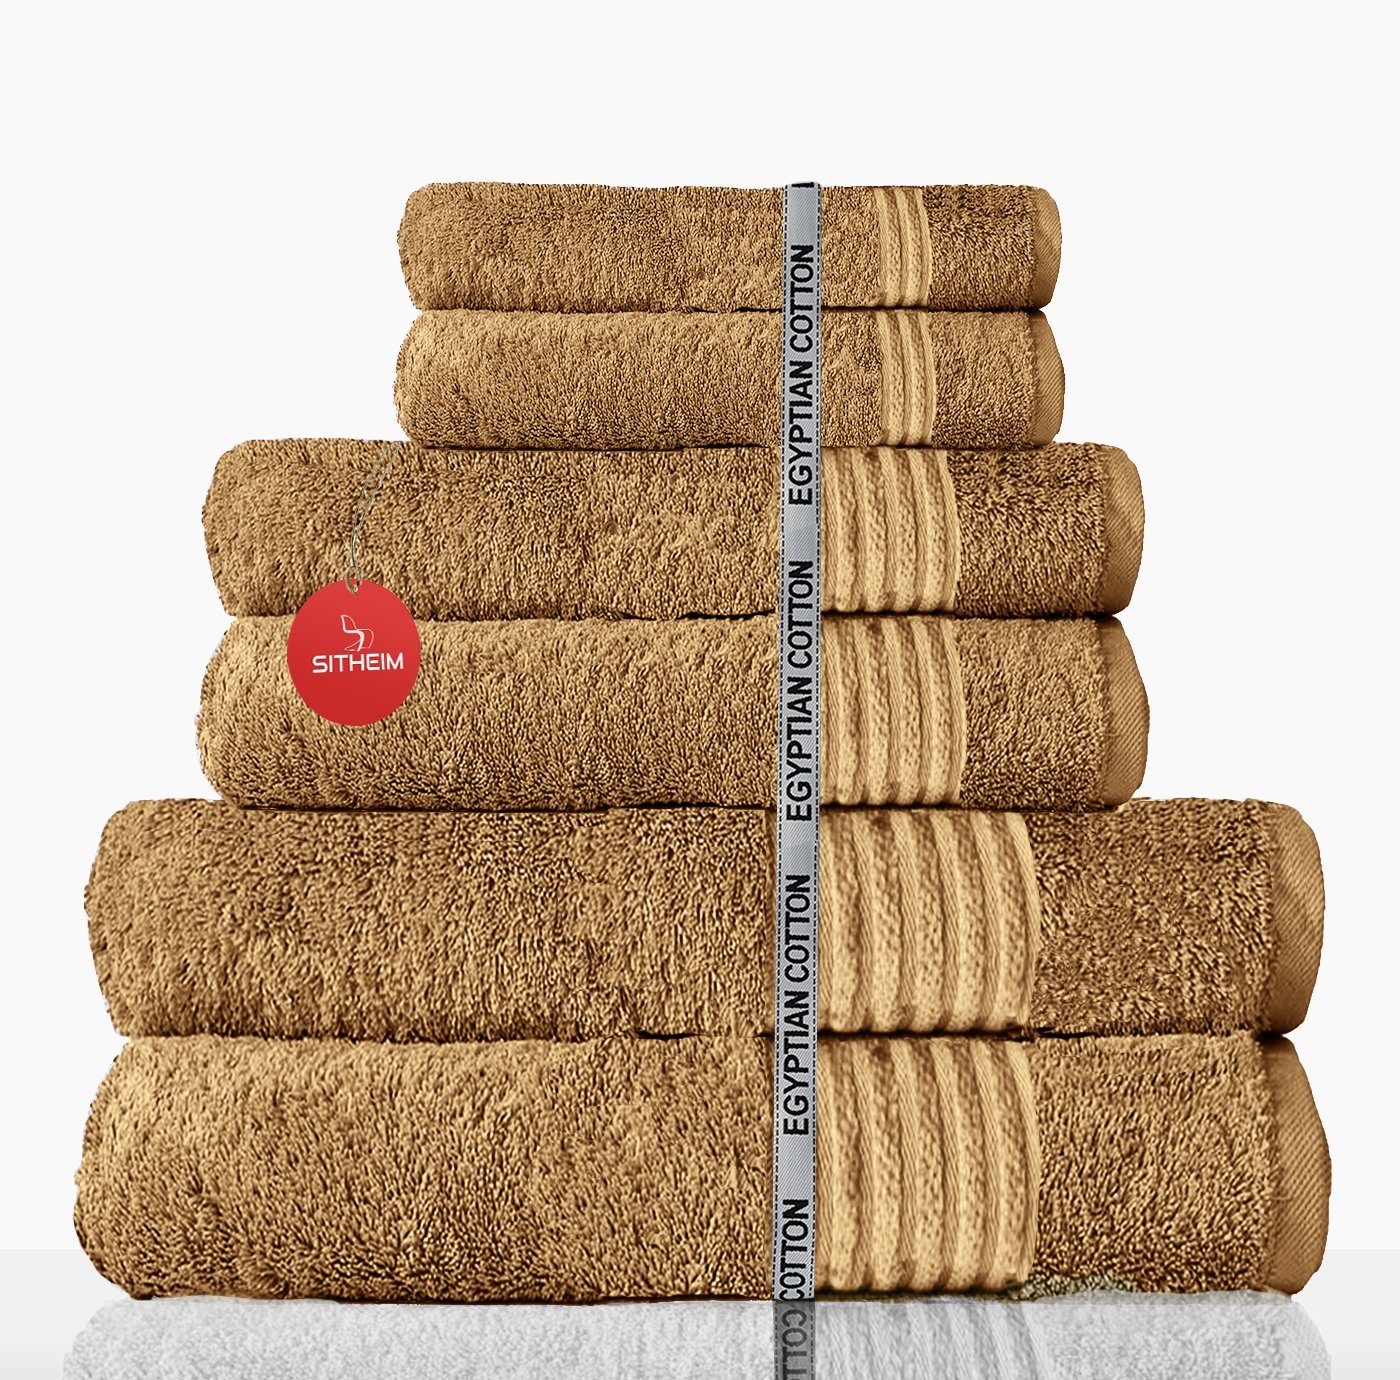 Set Baumwolle Taupe ägyptischer 100% Baumwolle 100% premium aus Handtuch 6-teiliges, Handtücher Sitheim-Europe ägyptische (6-tlg), ägyptische Baumwolle, NEFERTITI